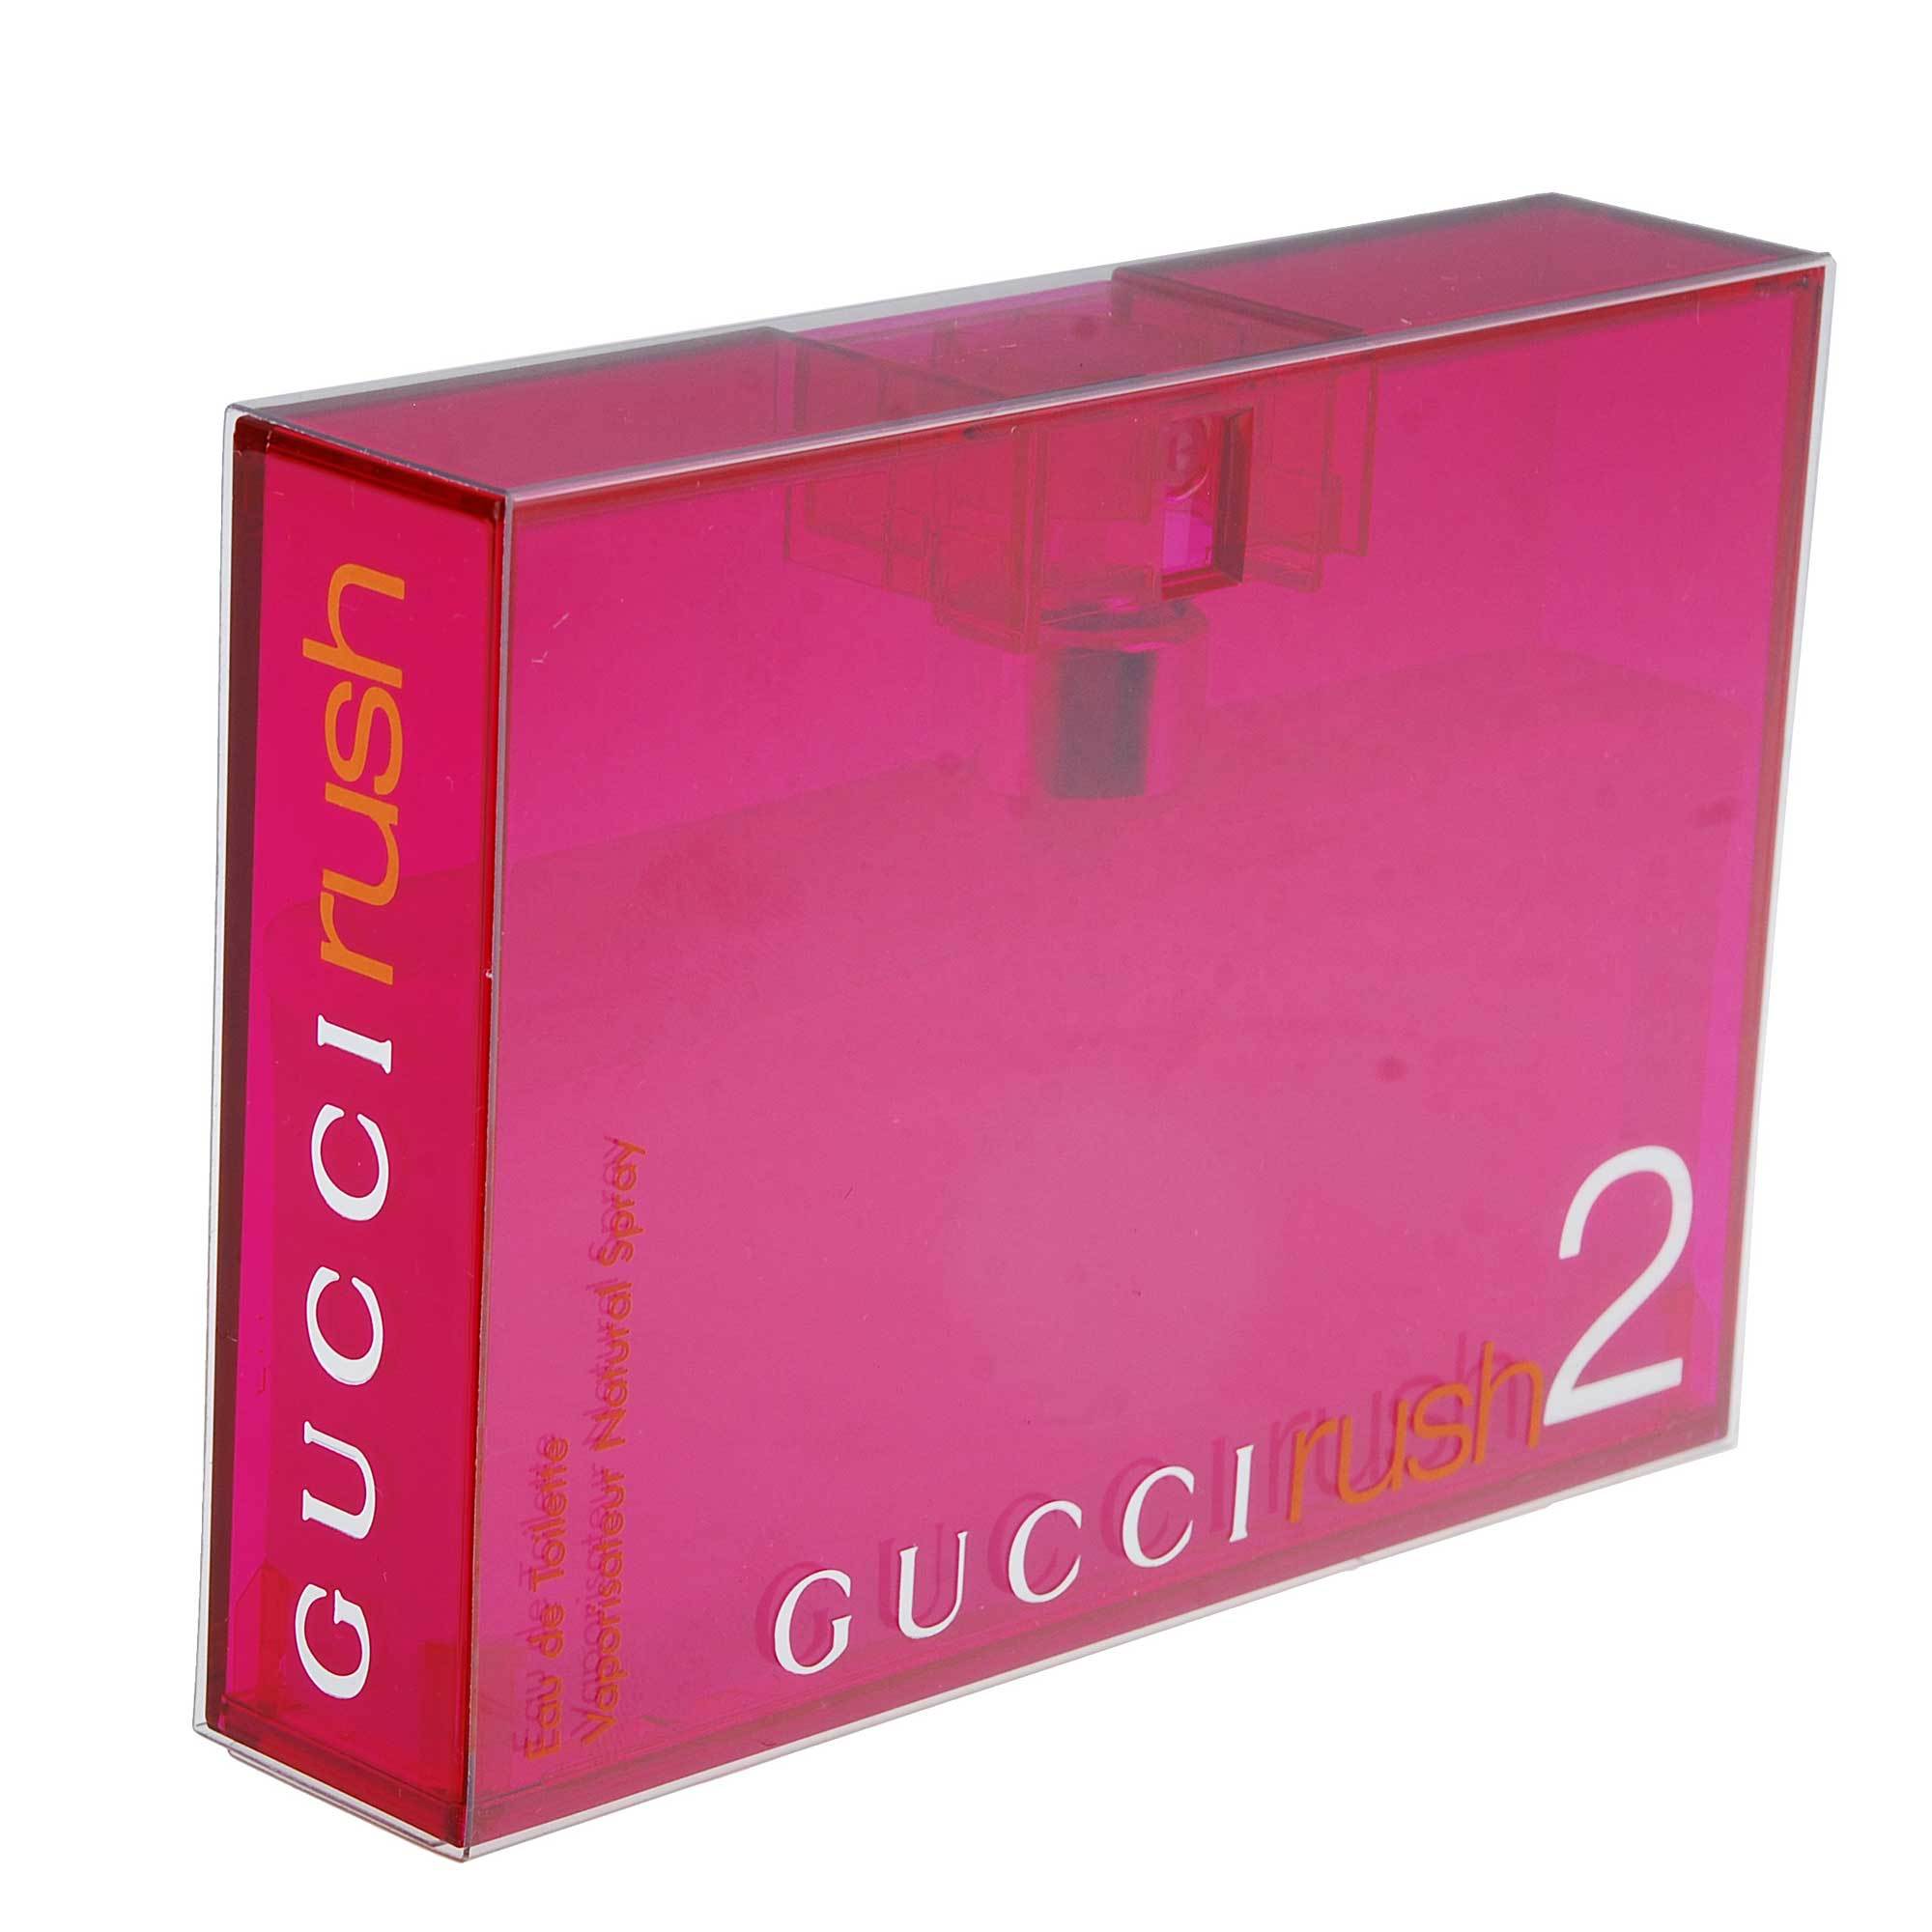 Аромат гуччи раш. Gucci Rush 2 Gucci. Gucci "Rush 2" 75 ml. Gucci Rush / Gucci (100 мл). Gucci Rush 2 50ml.